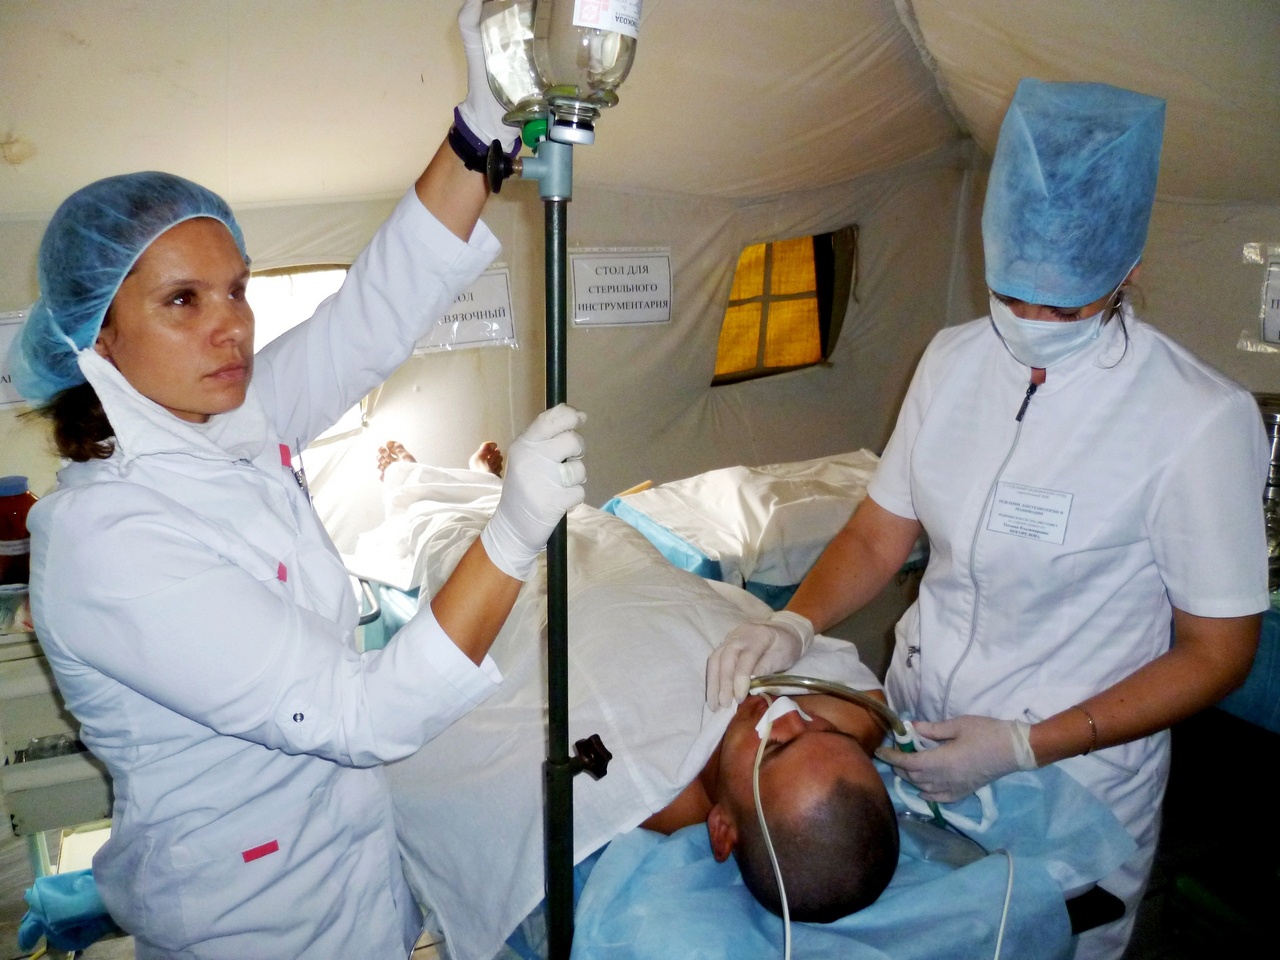 Каждая хирургическая операция с точки зрения анестезии сложна по-своему, считает Светлана.